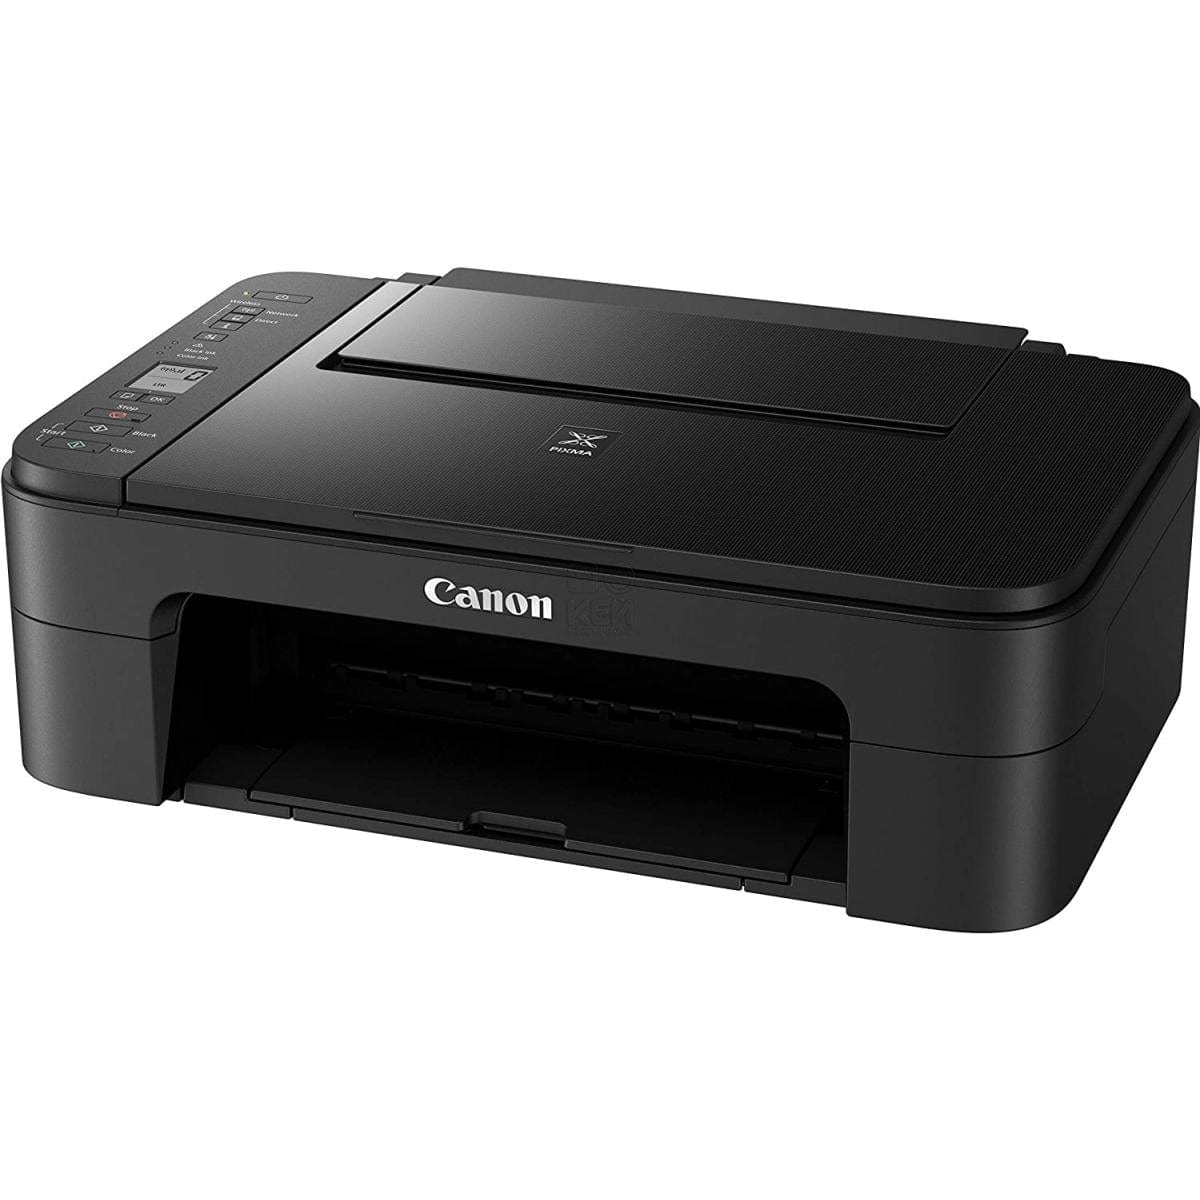 CANON Printers Canon PIXMA TS3140 Inkjet Photo Printer